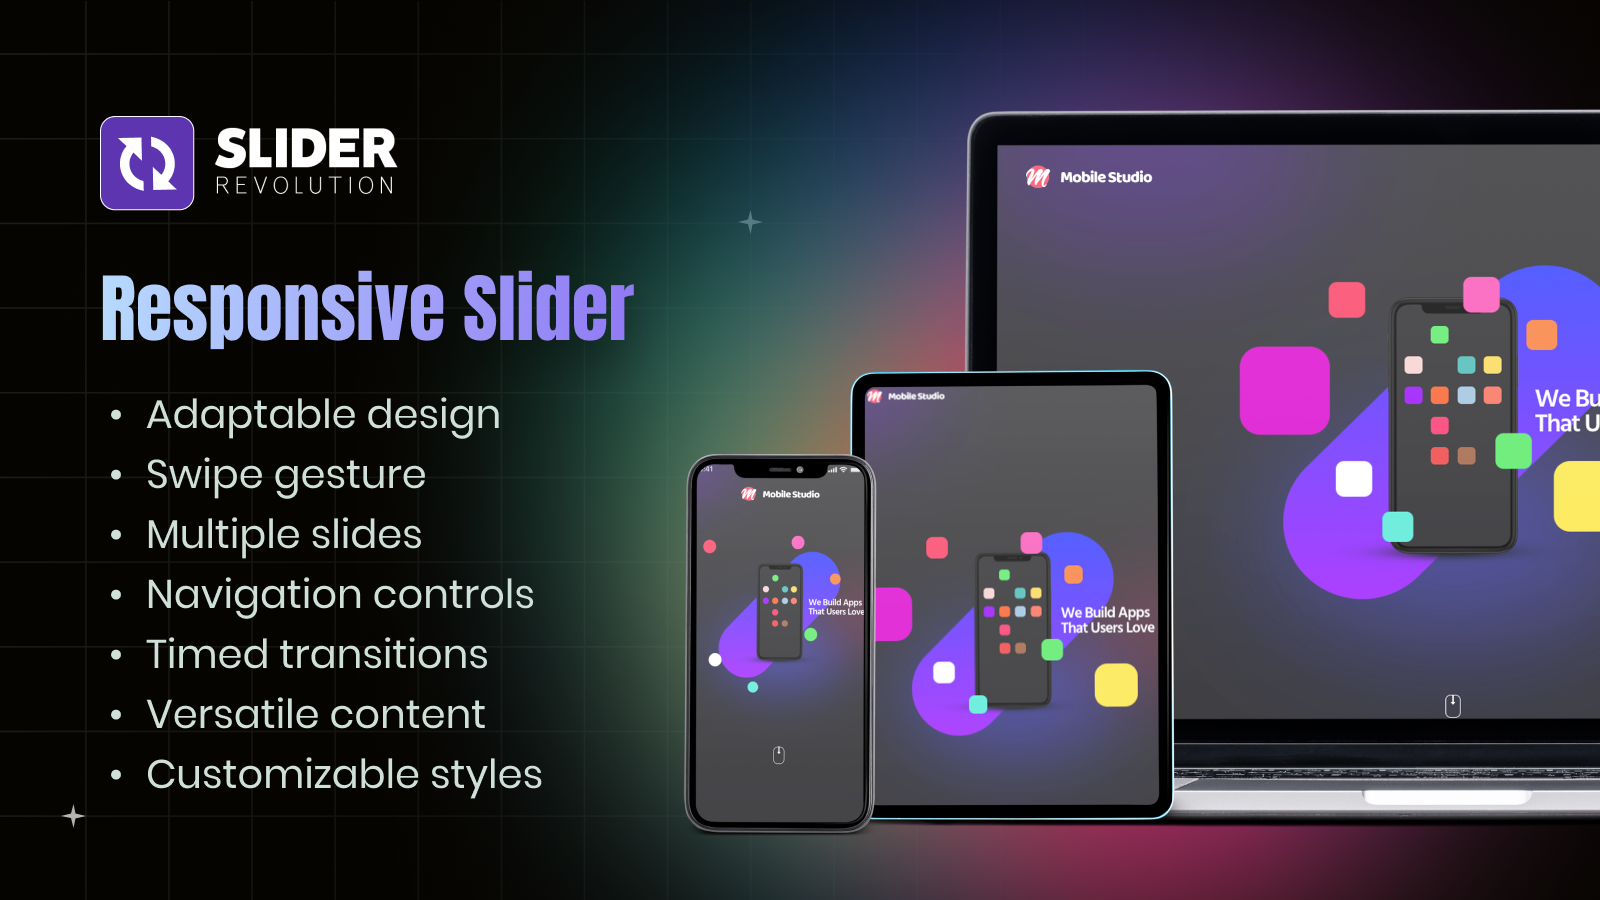 Slider completamente responsive para móvil, tablet y escritorio